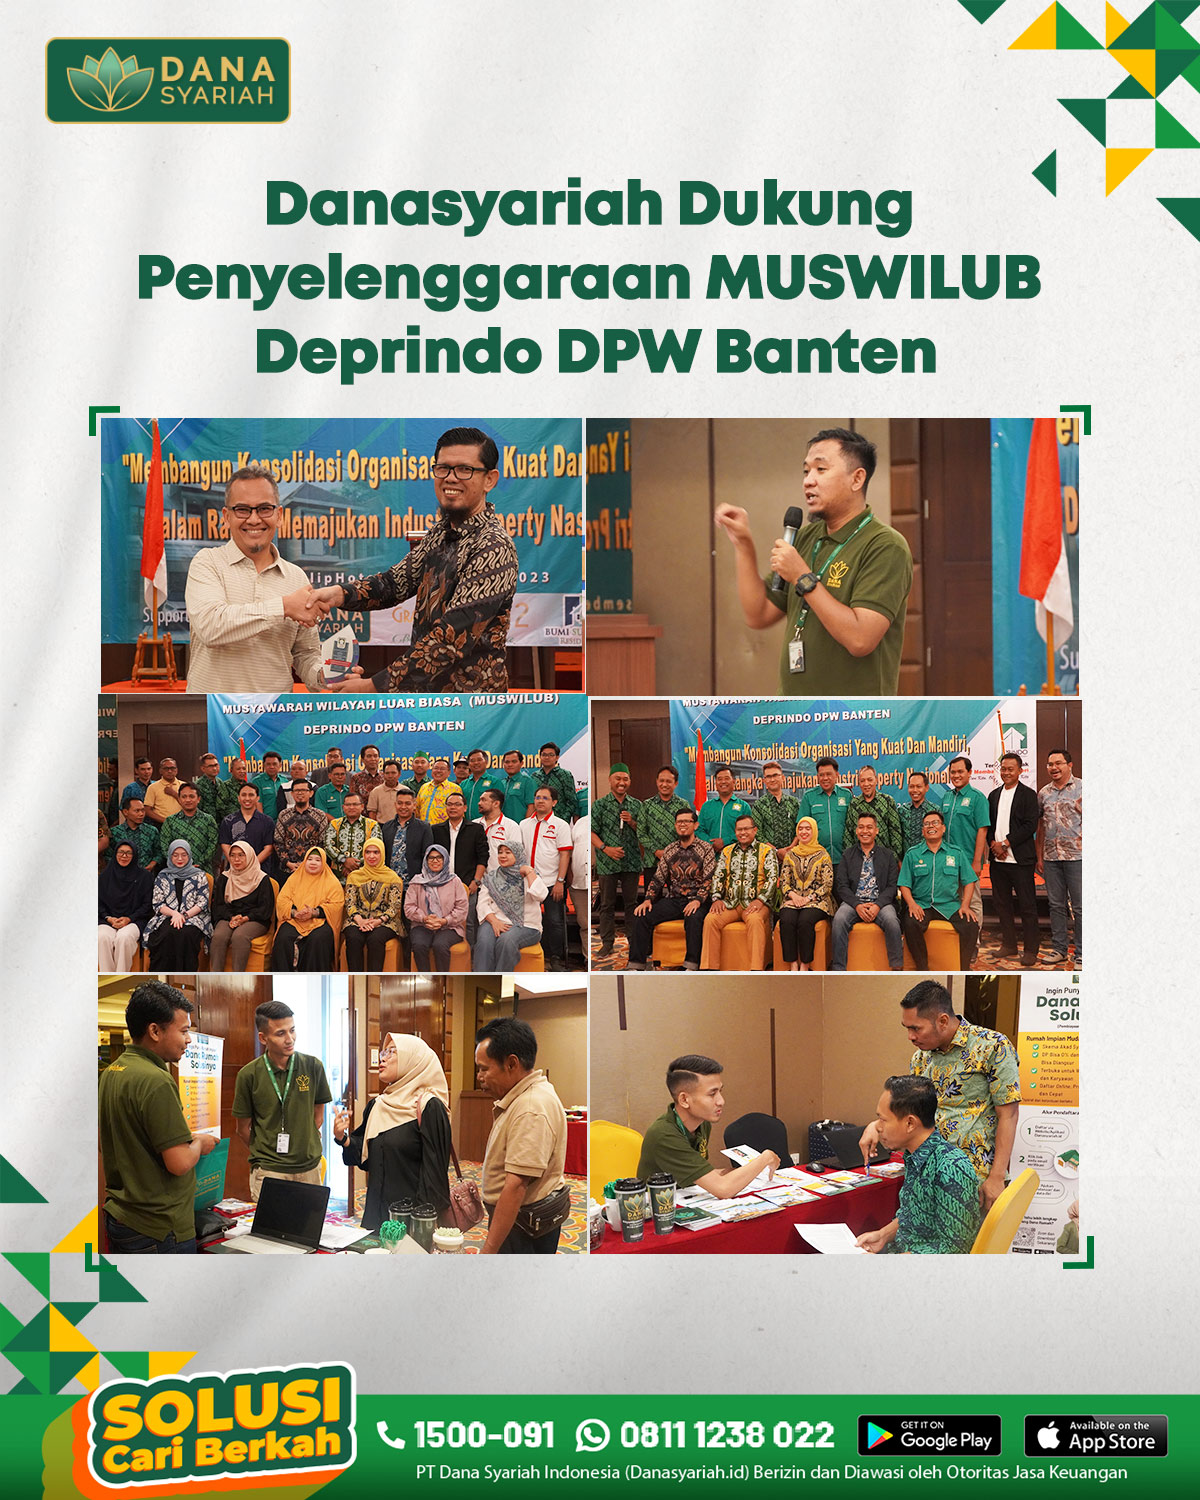 Dana Syariah Danasyariah Dukung Penyelenggaraan Muswilub Deprindo DPW Banten